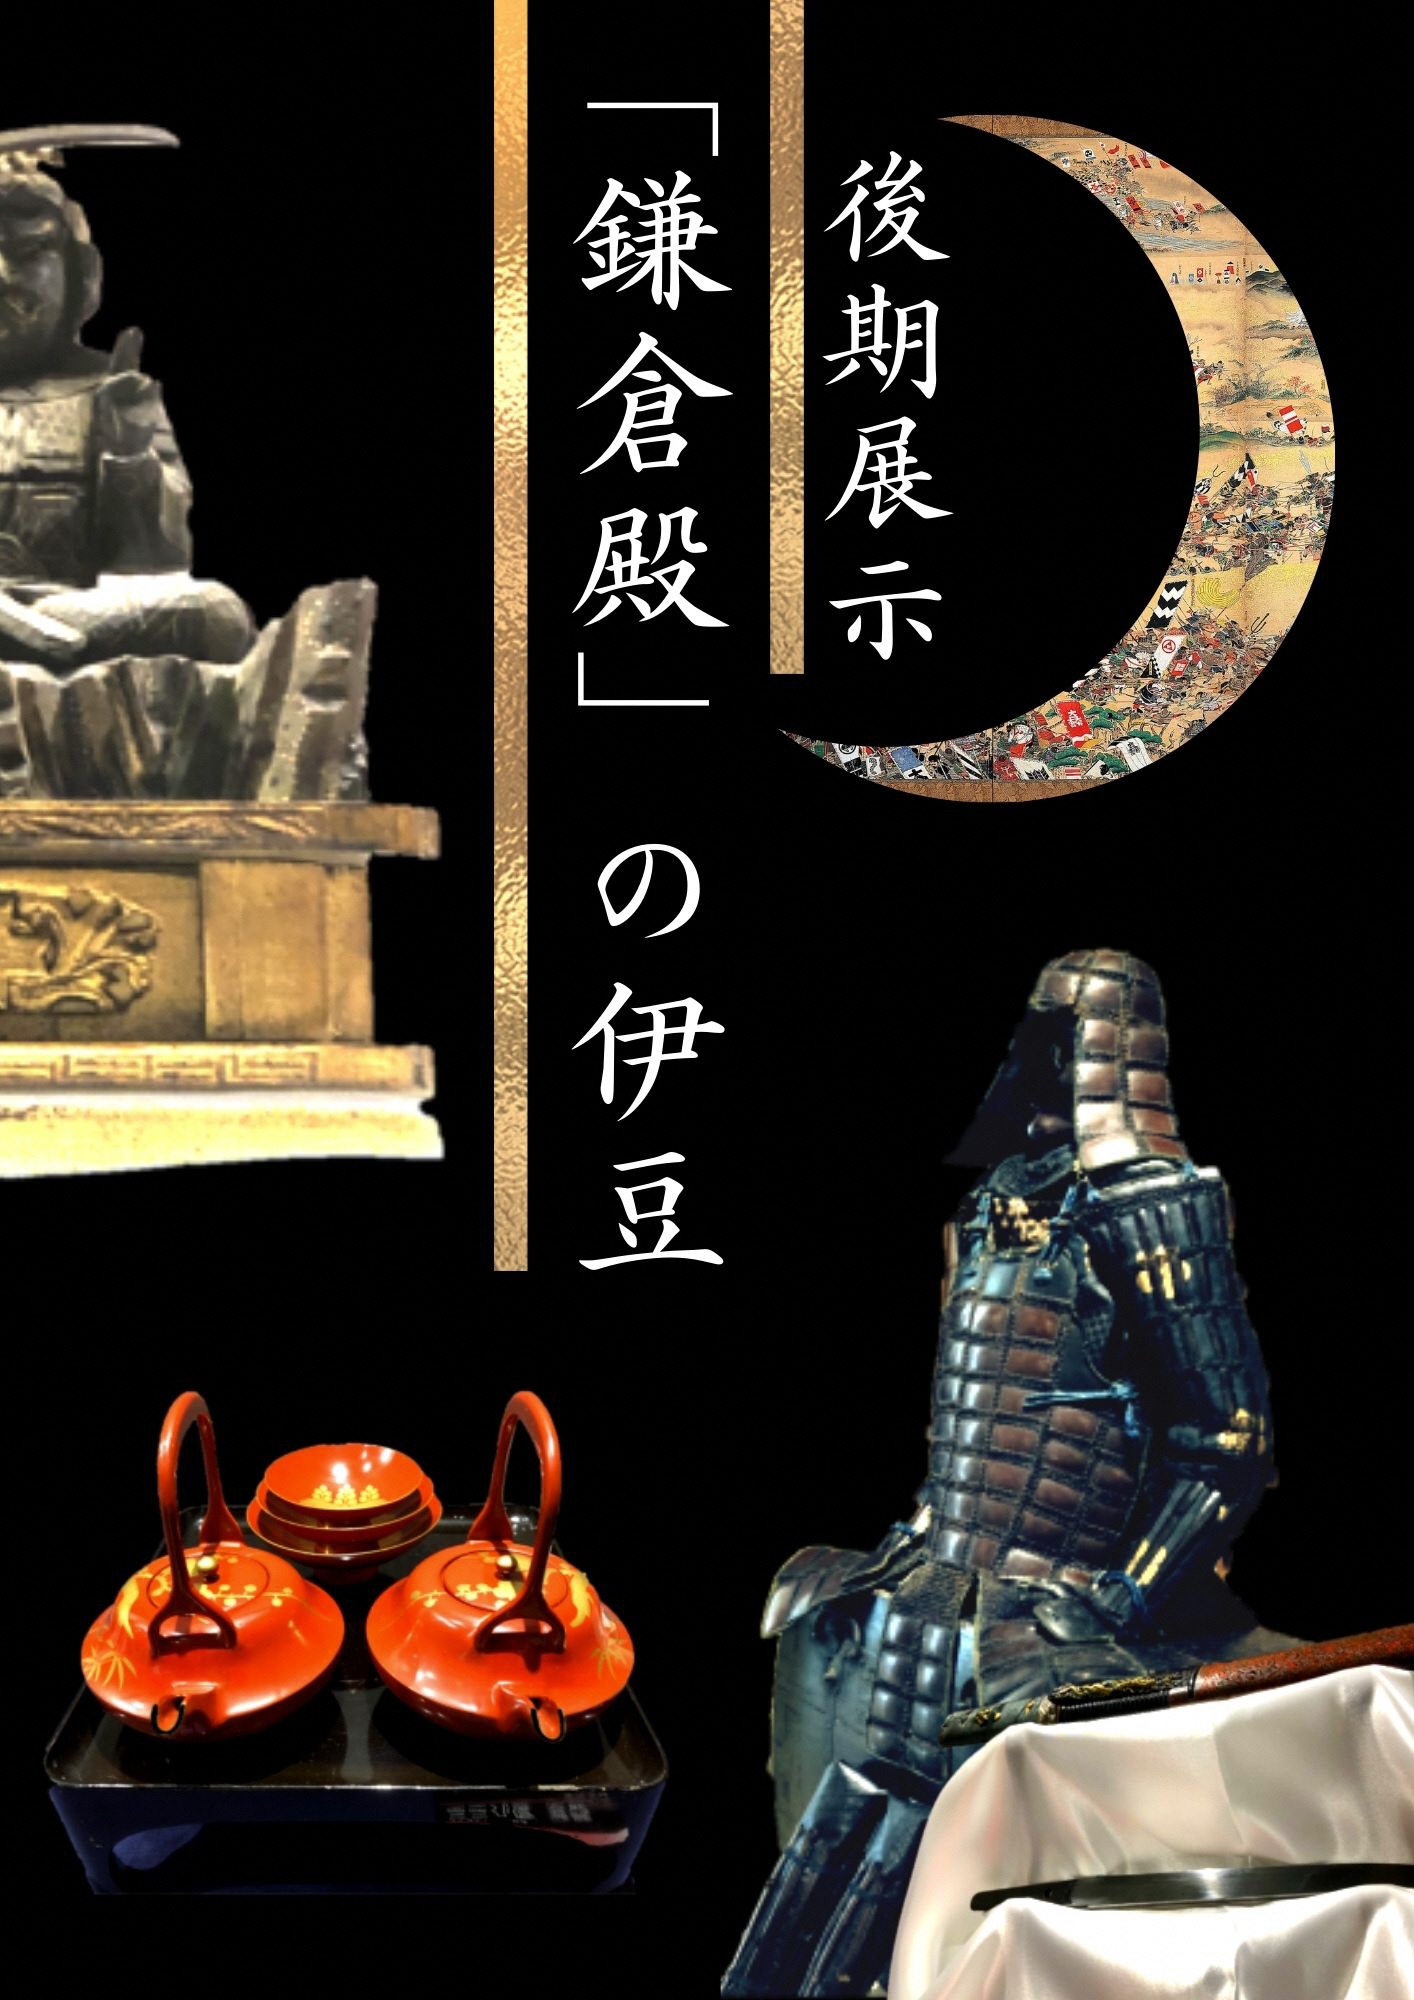 後期展示「鎌倉殿の伊豆」の甲冑や盃などの展示品のポスター